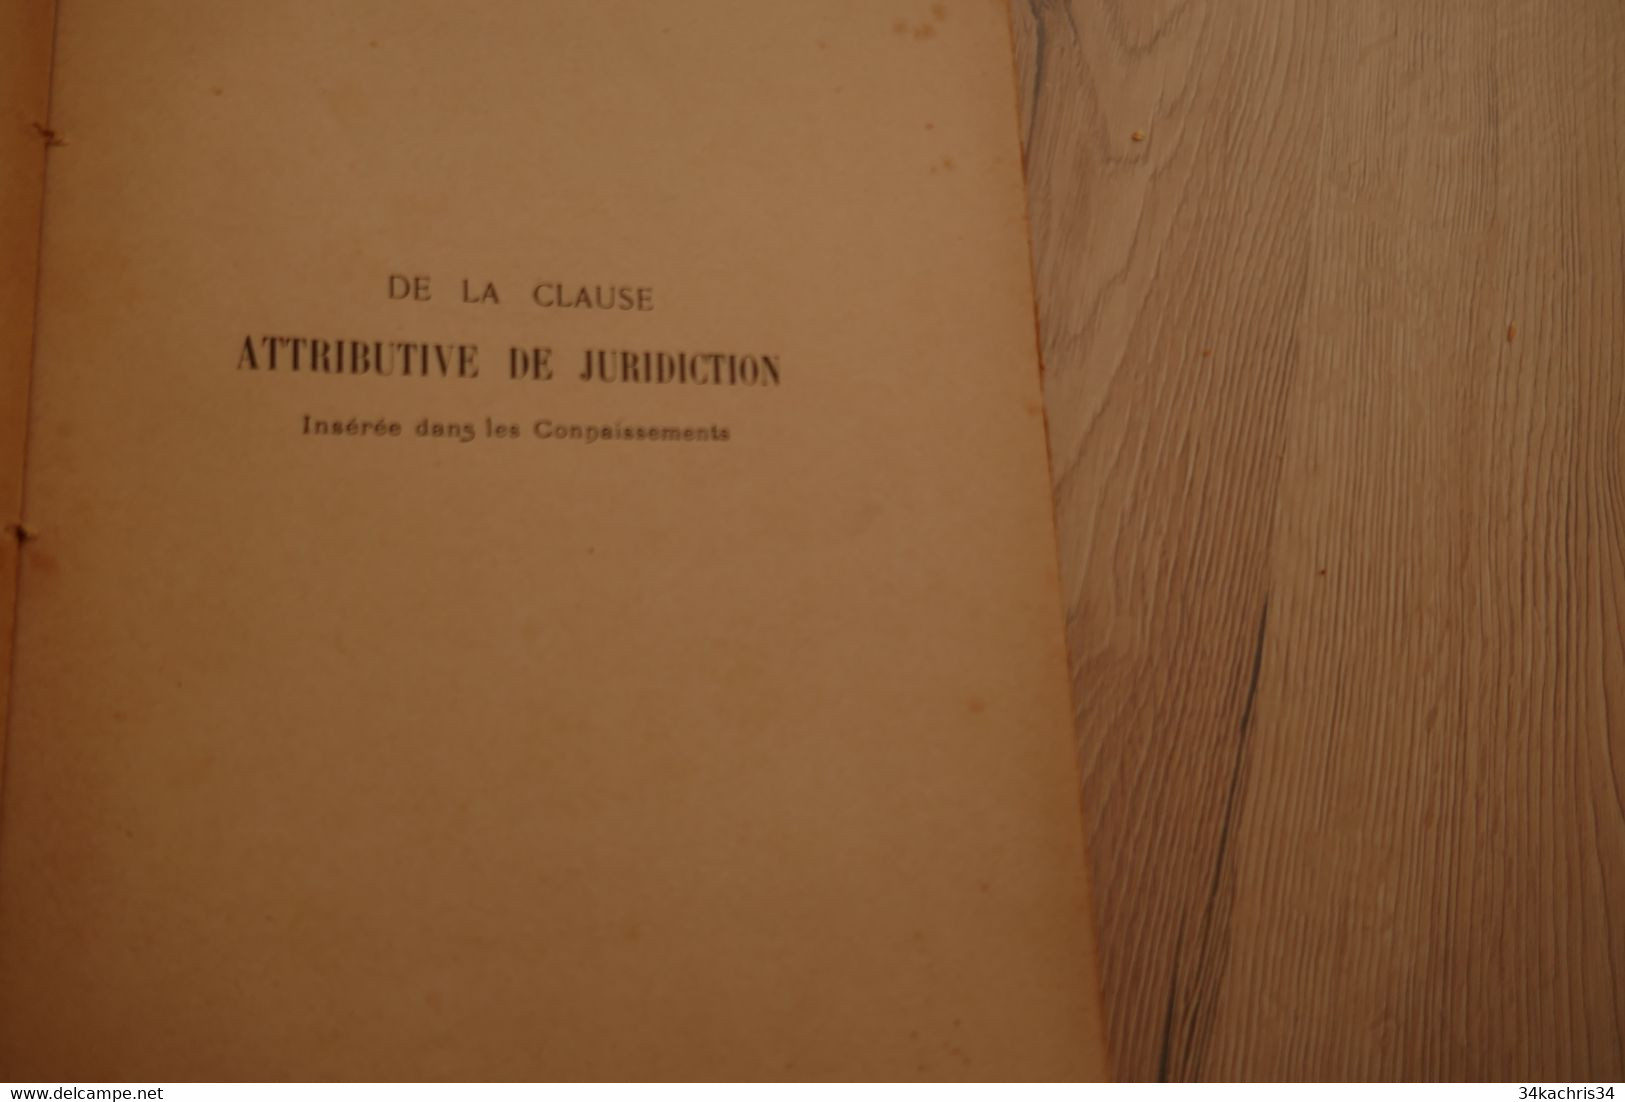 Thèse Pour Le Doctorat De La Clause Attributive De Juridiction Insérée Dans Les Connaissements 1905 P.Gautier Marine Com - Boten